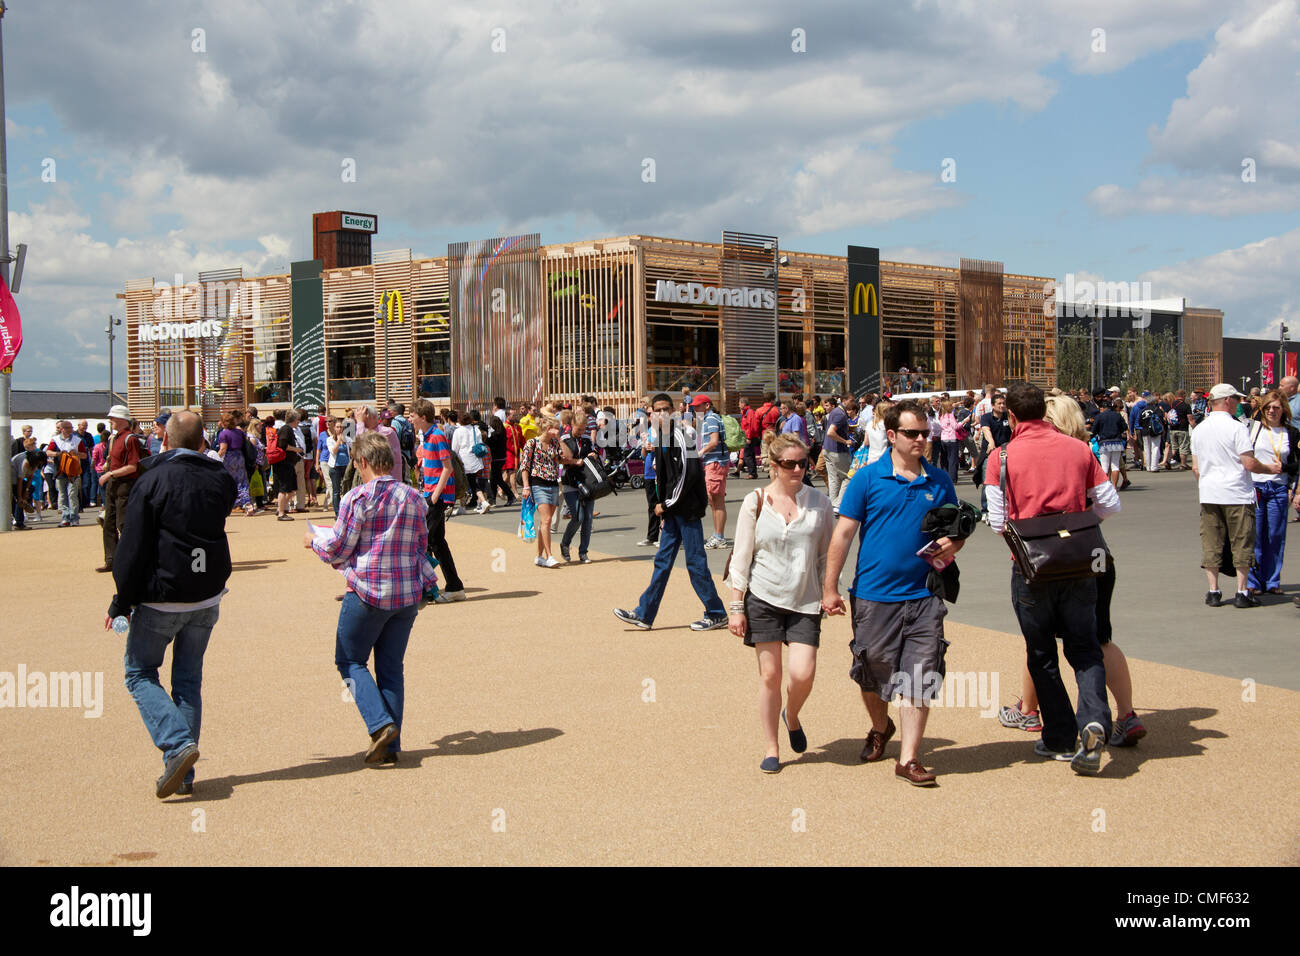 La gente che camminava davanti a un ristorante MacDonalds su una soleggiata giornata al Parco Olimpico, Londra 2012 Giochi Olimpici sito, Stratford London E20, Regno Unito Foto Stock